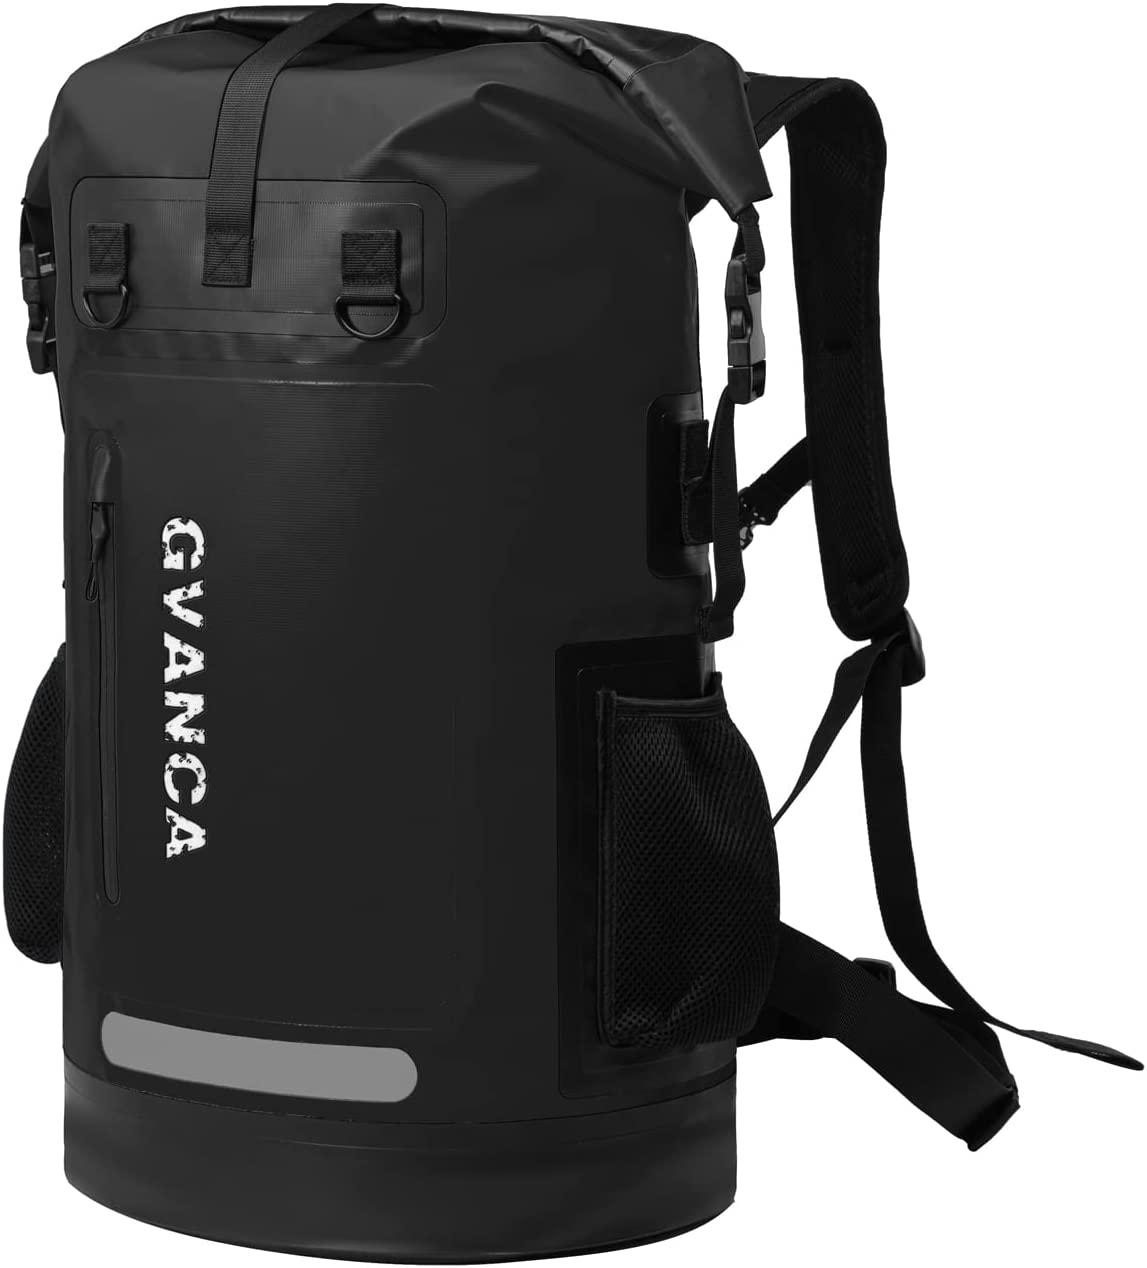 Gvanca Dry Bag - Best Waterproof Dry Bag